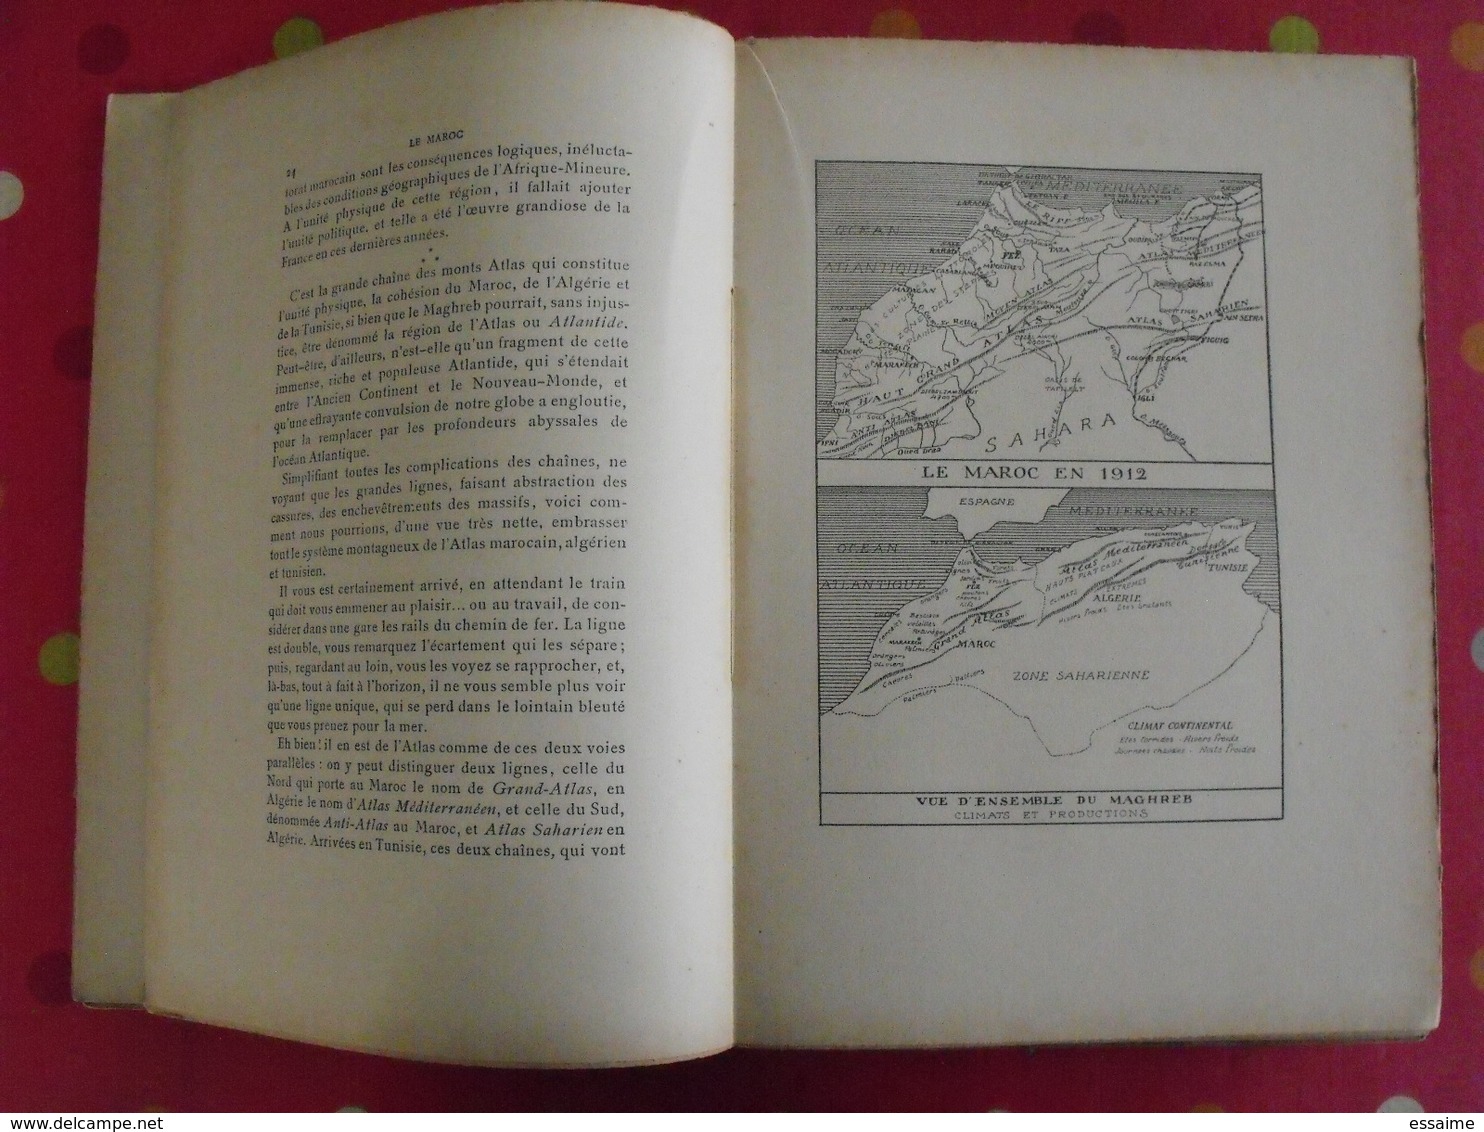 Le Maroc, Un Empire Qui Se Réveille Par Gabriel Galland. Librairie Nationale D'éducation Et De Récréation. Sd (1912) - Non Classés